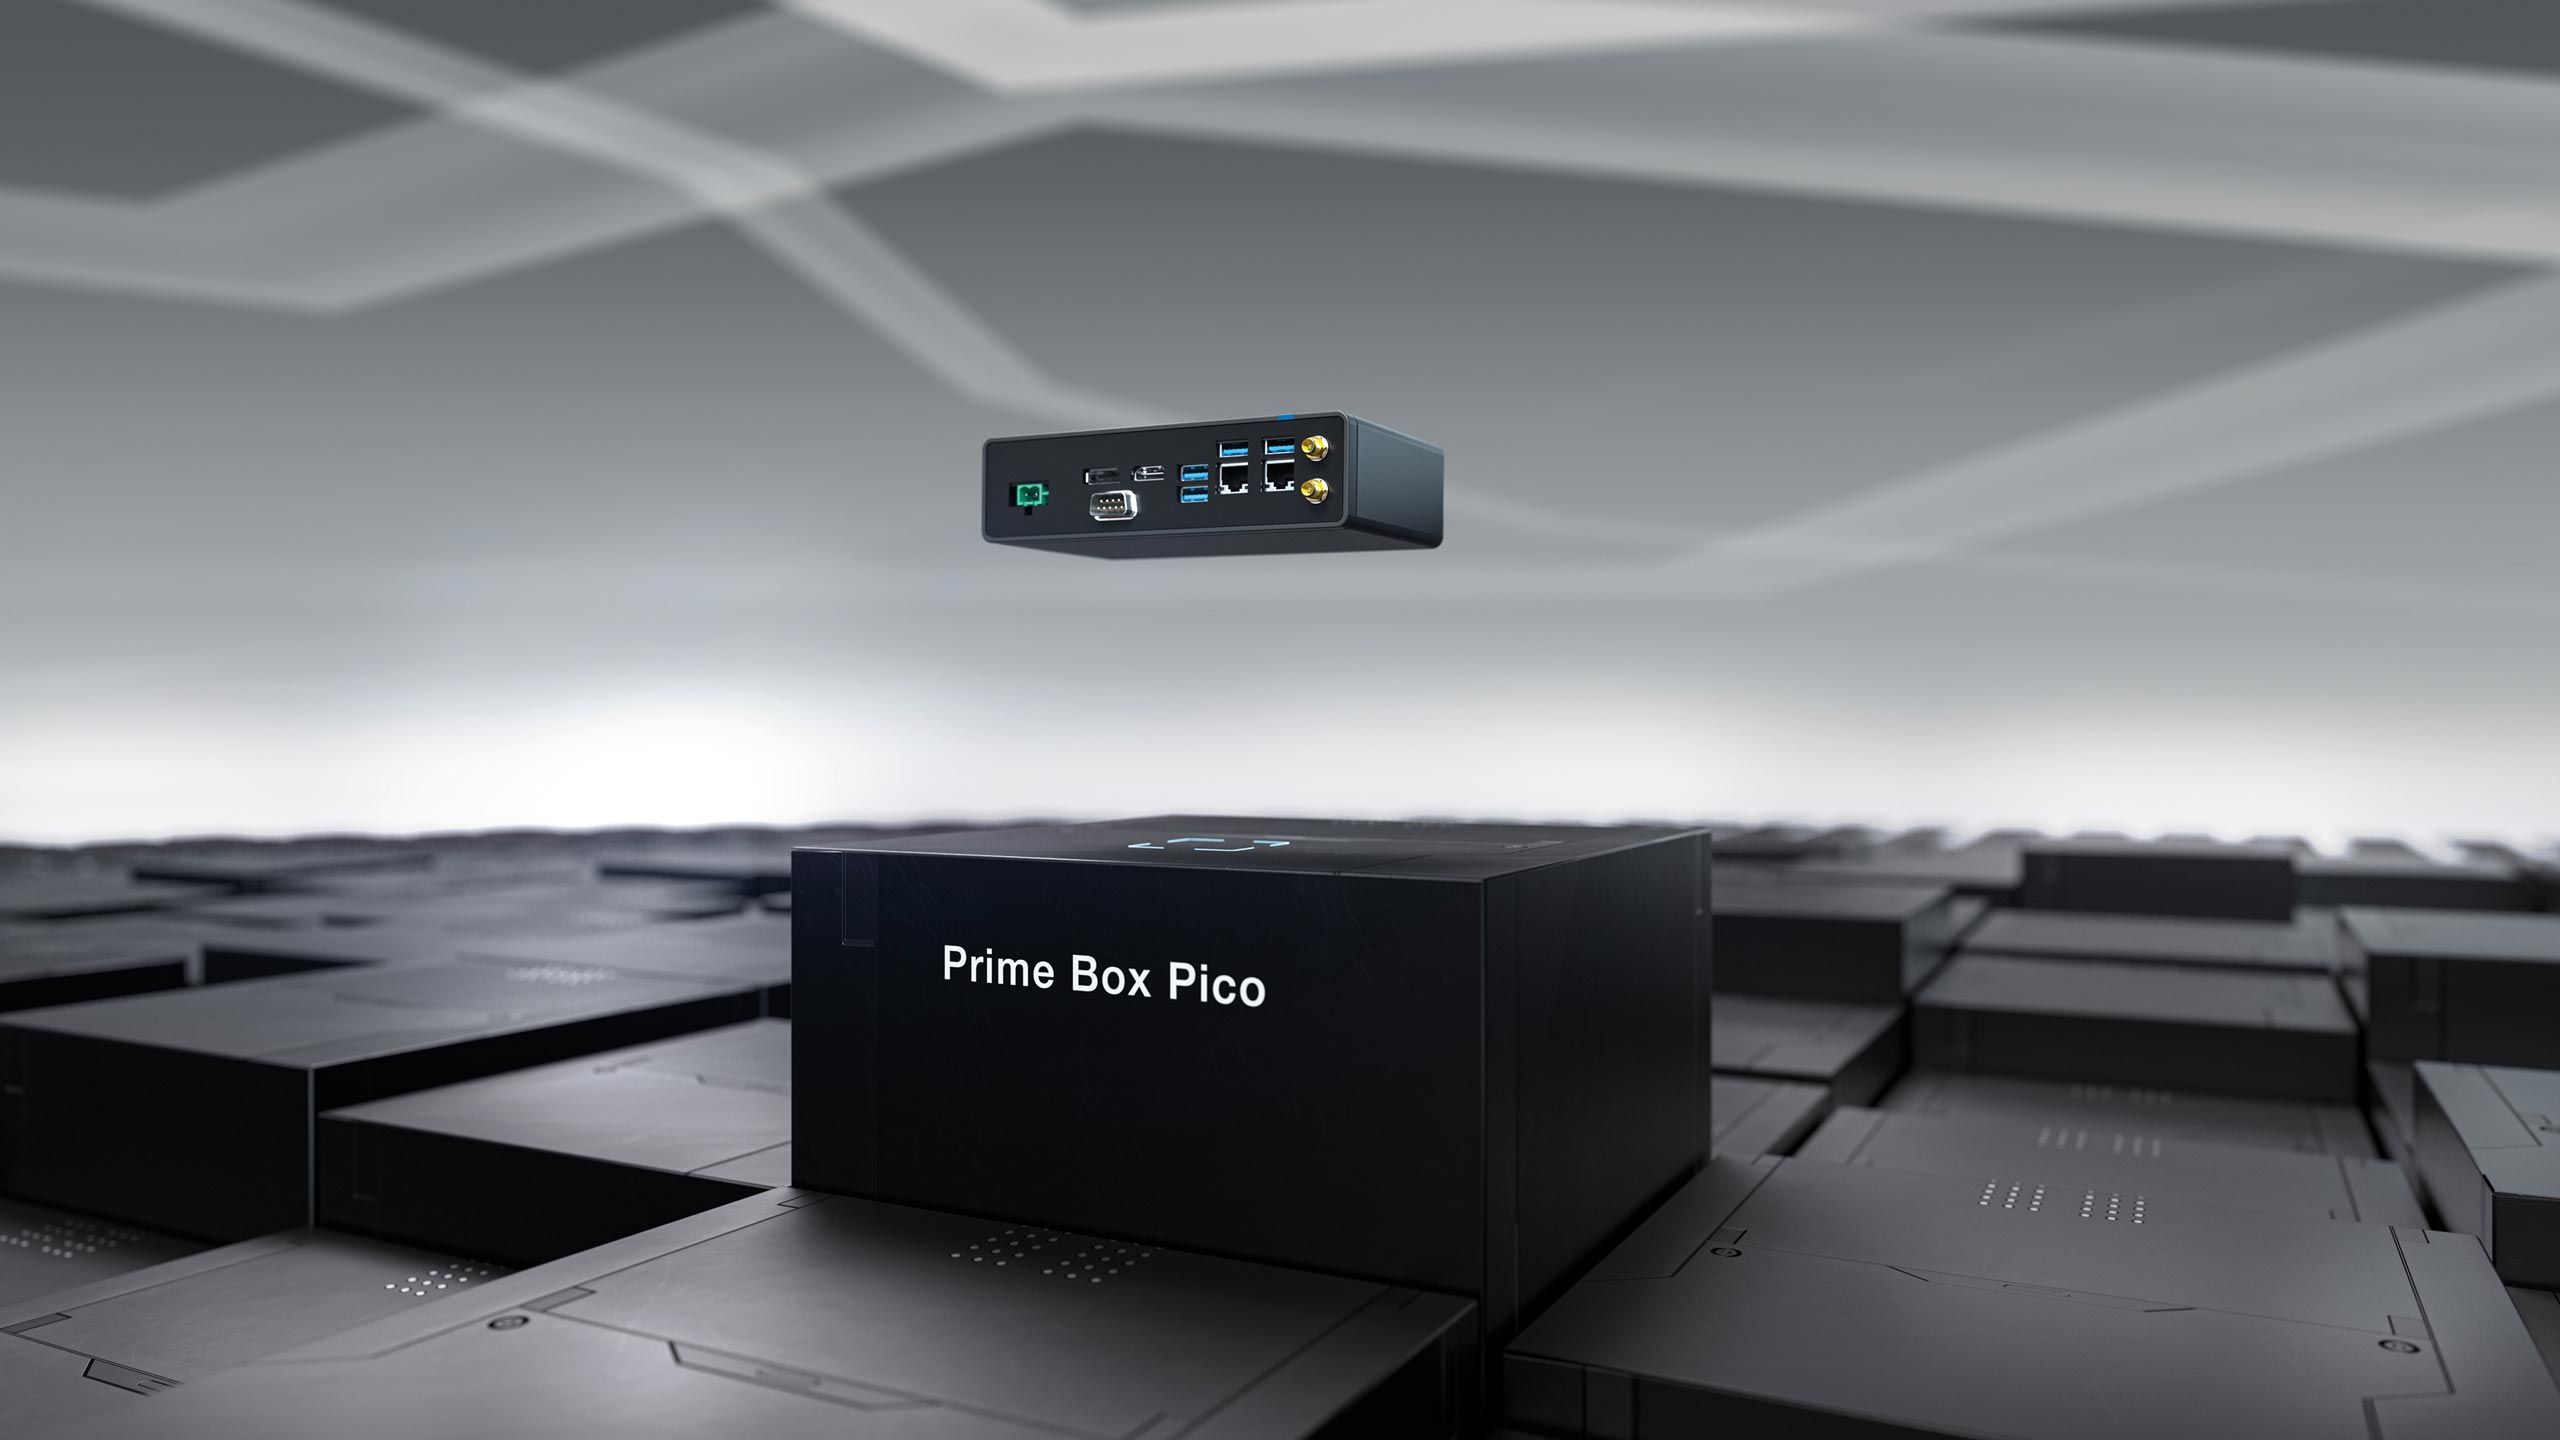 Prime Box Pico